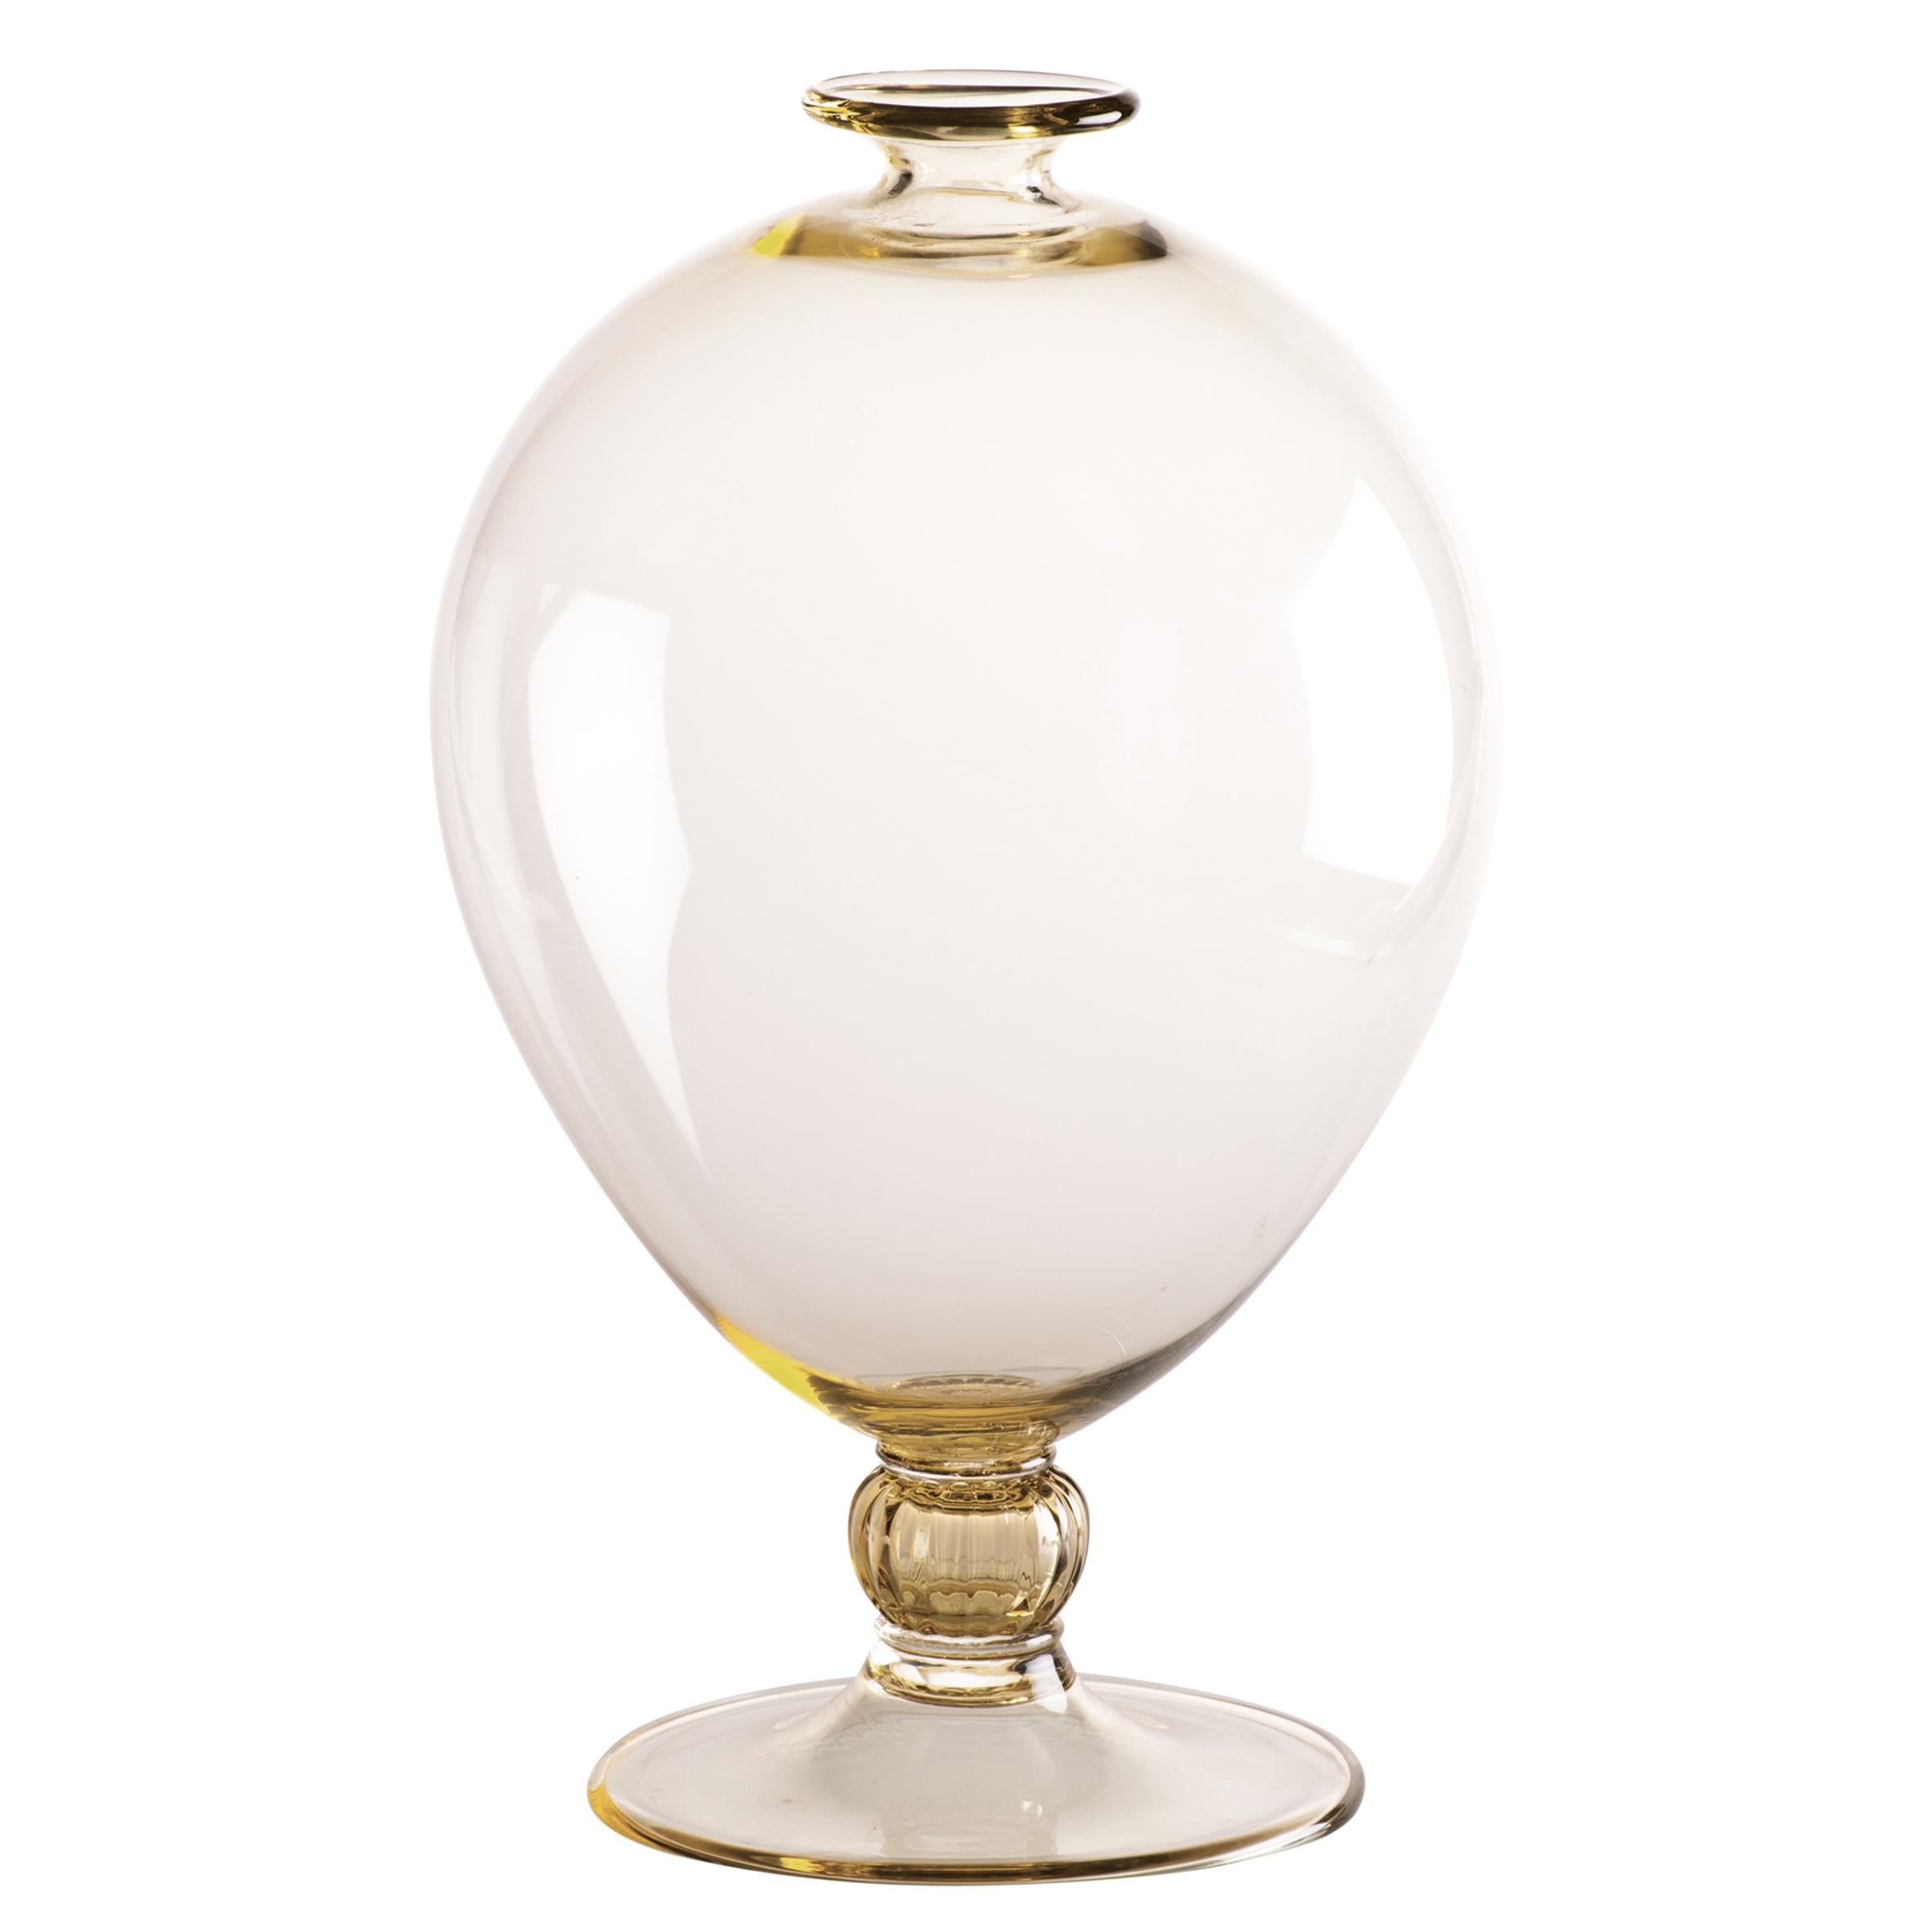 Vase en verre Venini avec corps cylindrique et base décorative en cristal. Présenté en classe de couleur paille et jaune avec cristal conçu en 1921. Parfait pour la décoration intérieure en tant que conteneur ou pièce forte pour n'importe quelle